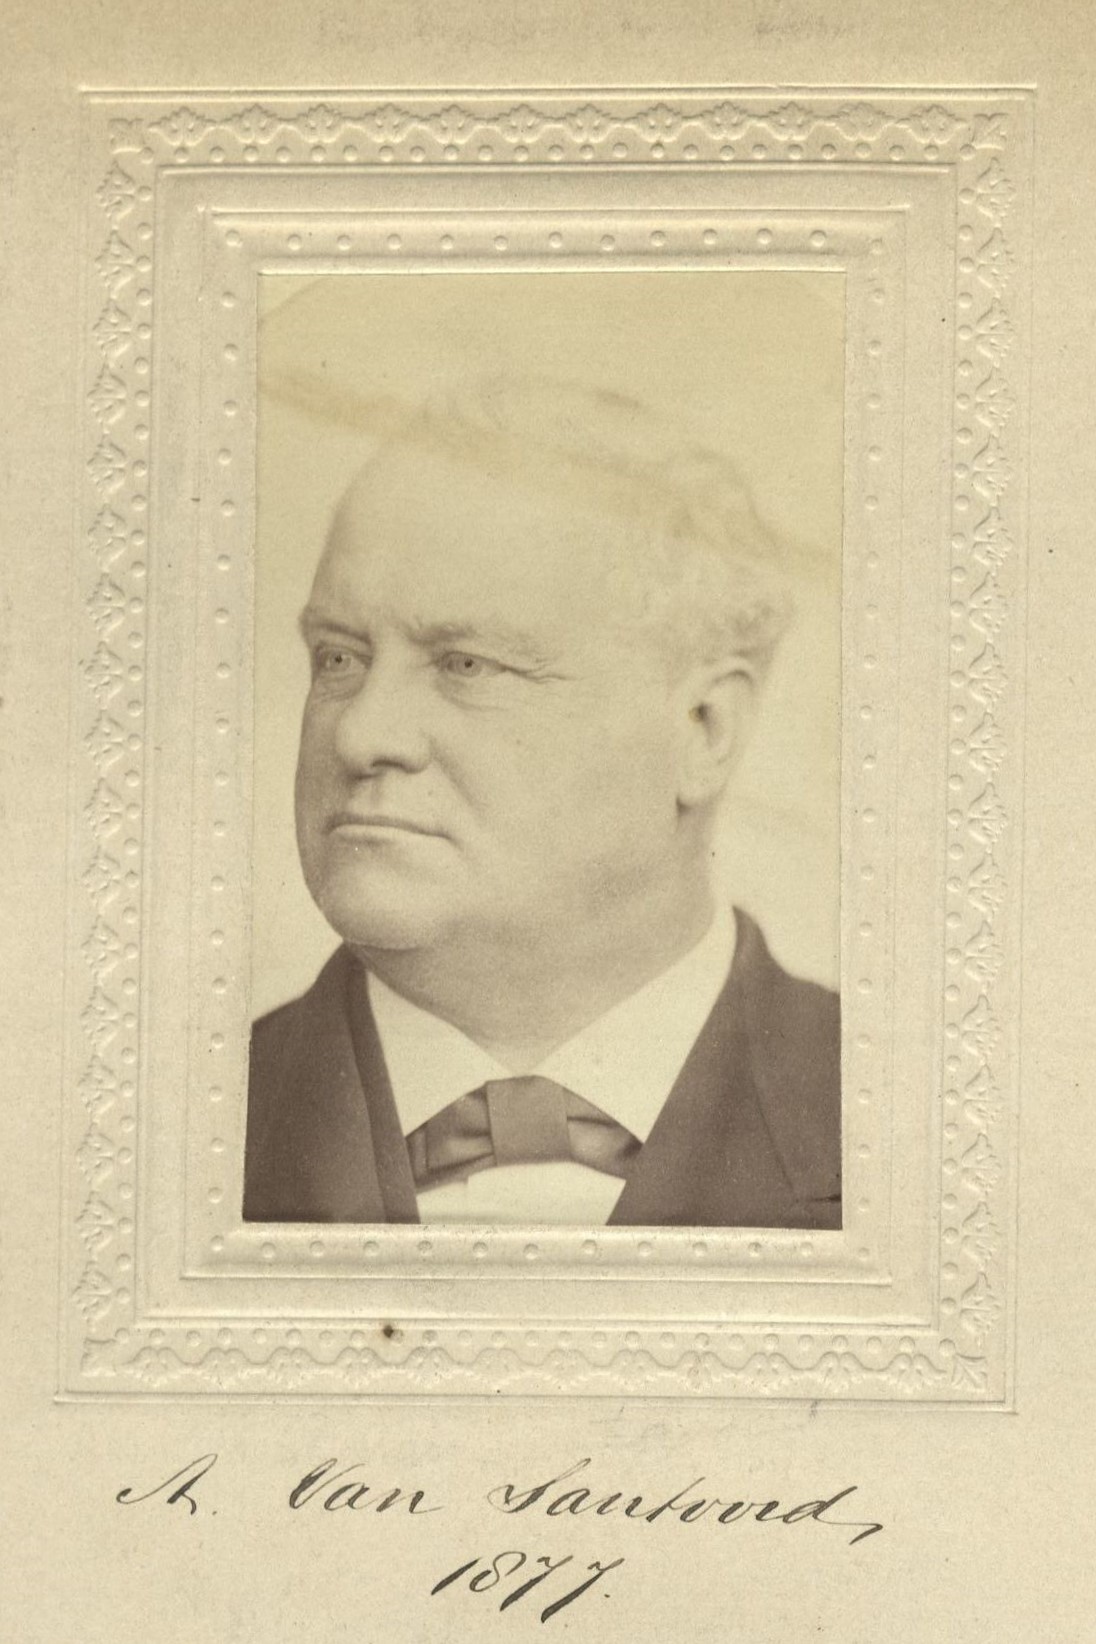 Member portrait of Alfred Van Santvoord